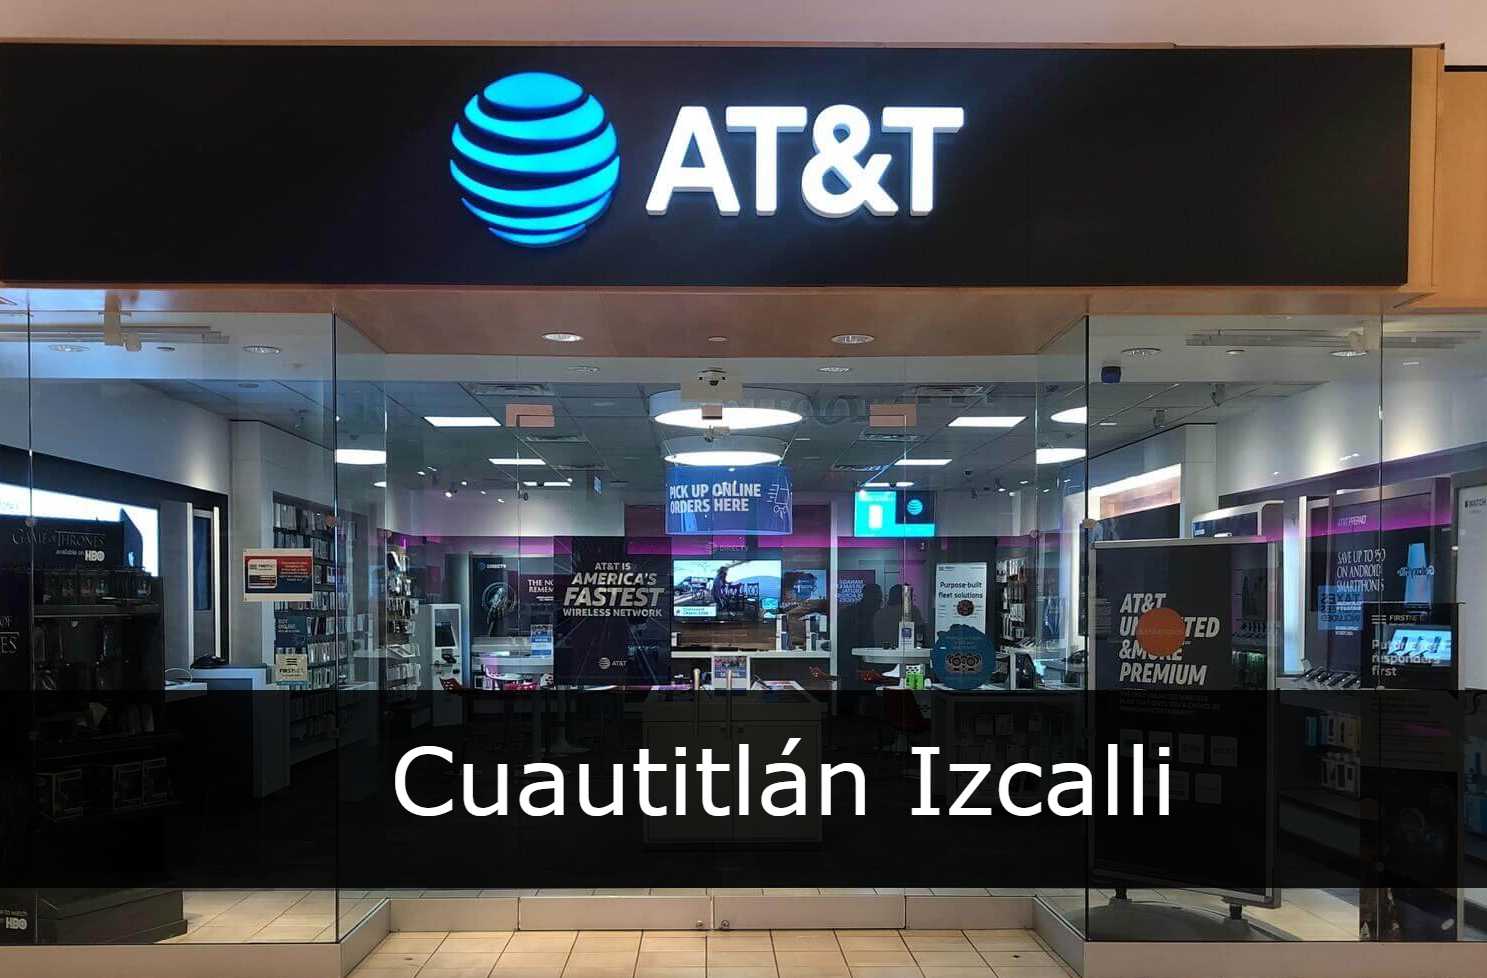 AT&T Cuautitlán Izcalli